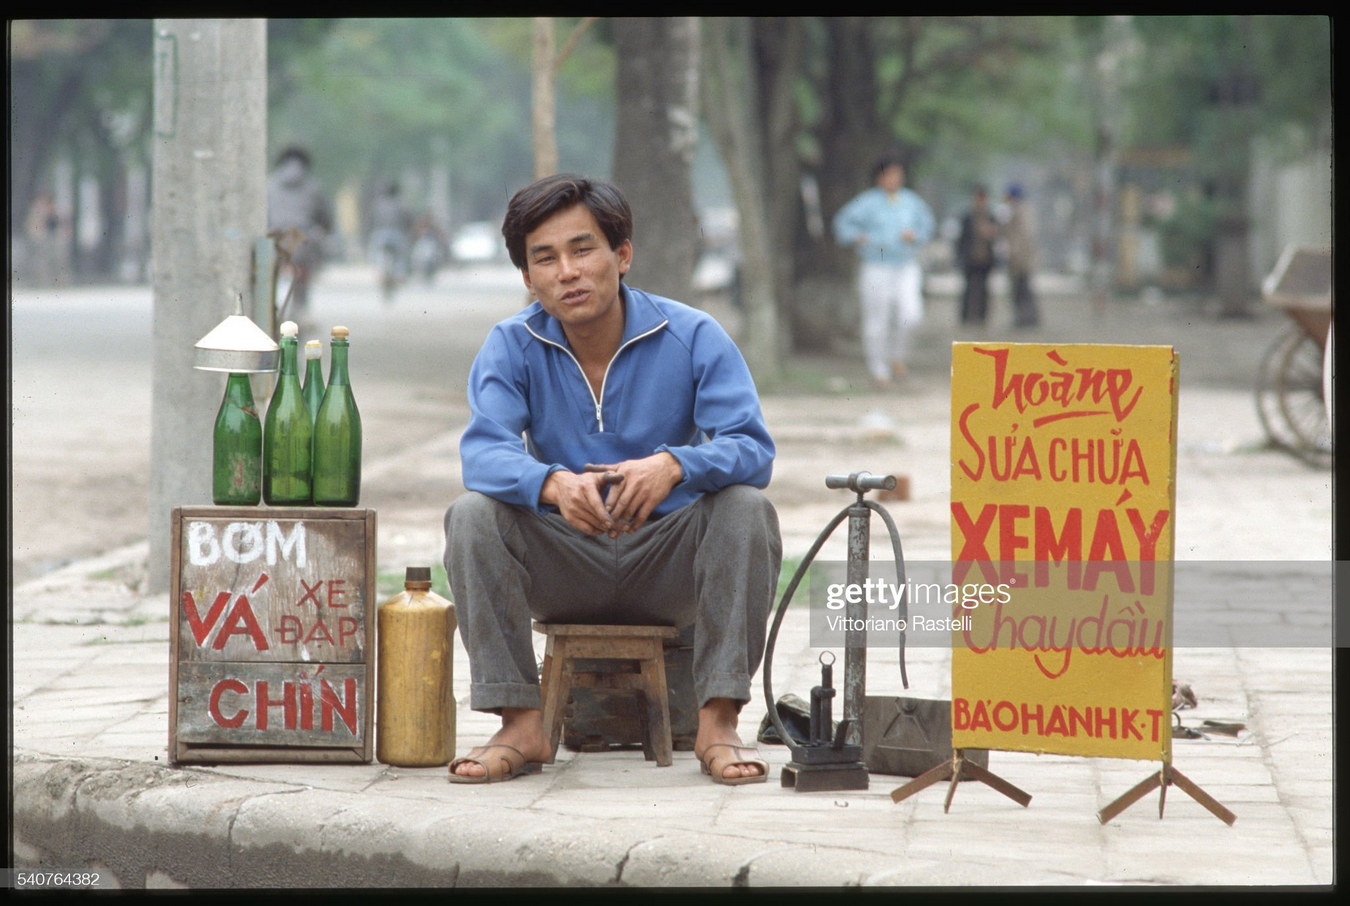 Vietnam 1991 Vittoriano Rastelli (done)